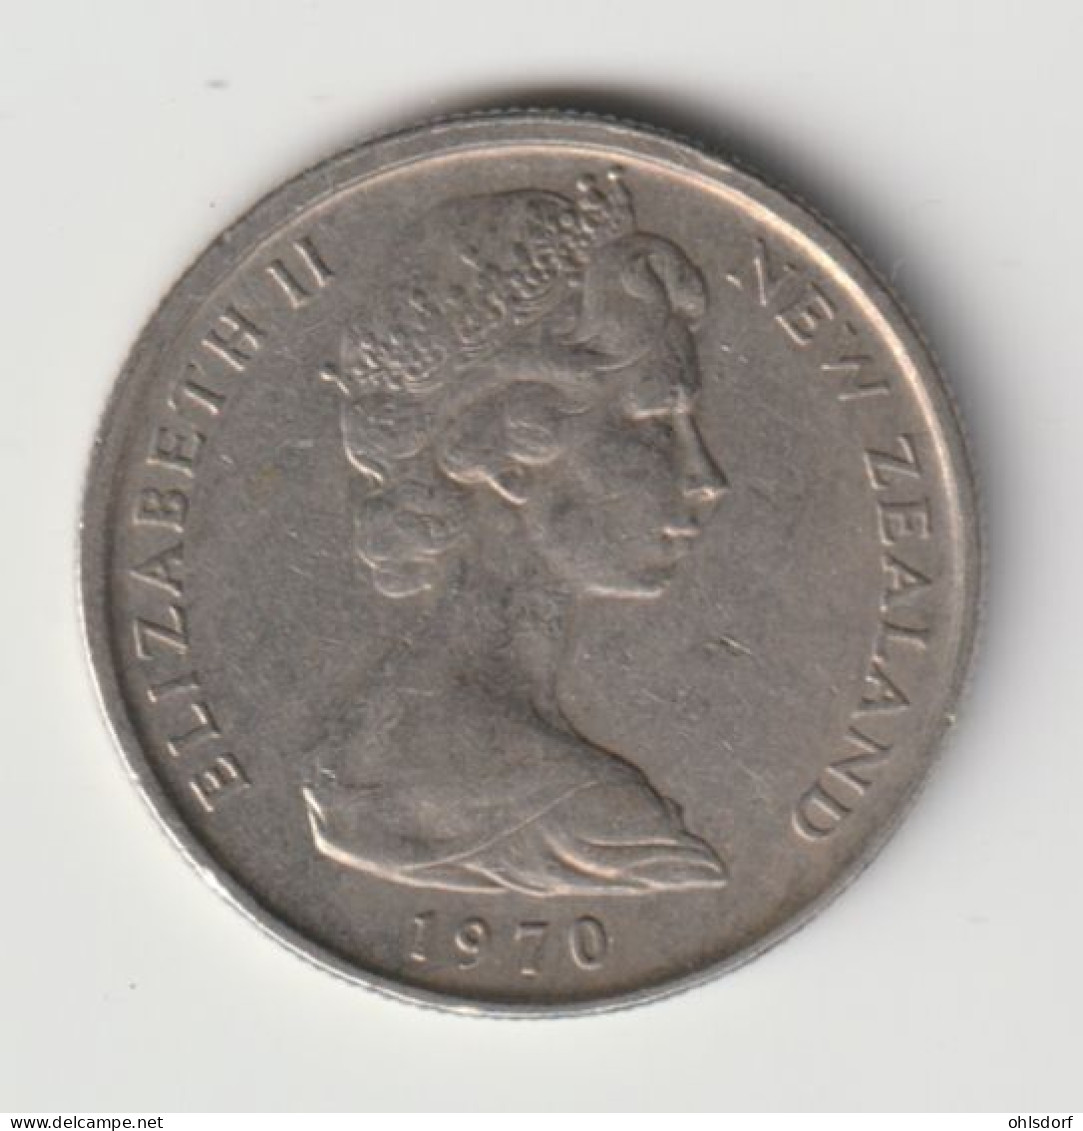 NEW ZEALAND 1970: 5 Cents, KM 34.1 - Neuseeland